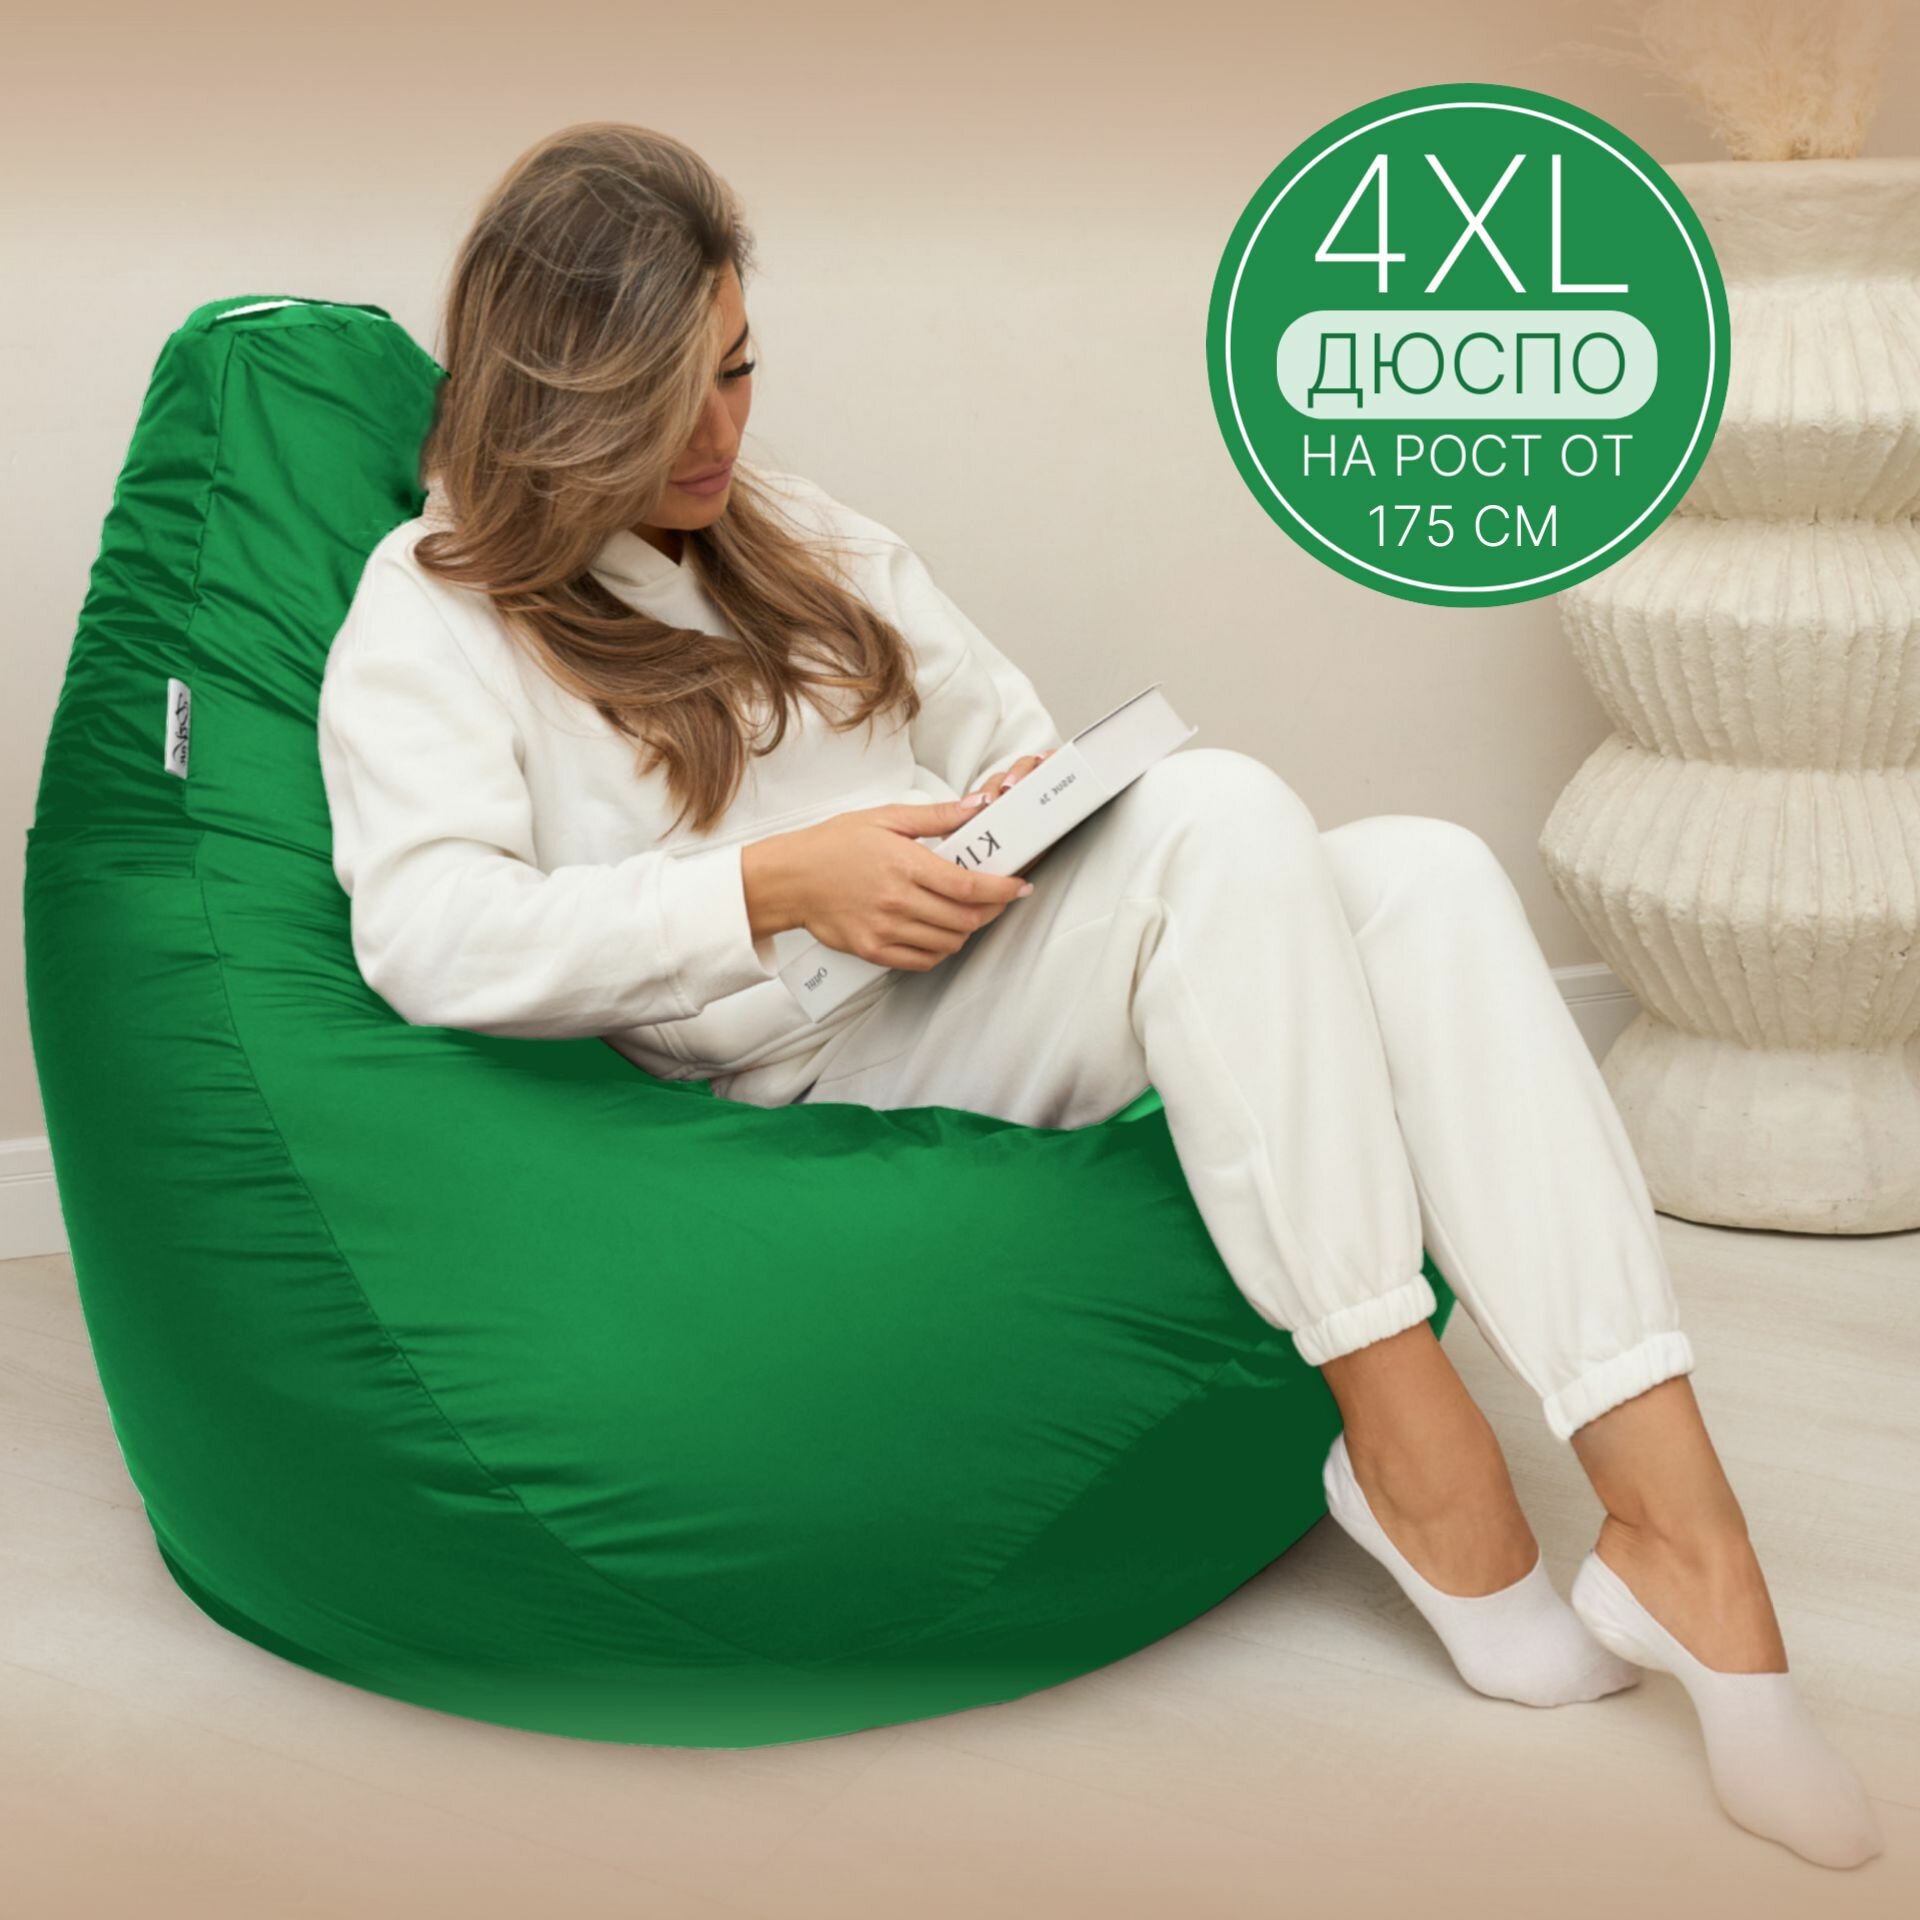 Кресло мешок Груша 4XL зеленый Дюспо